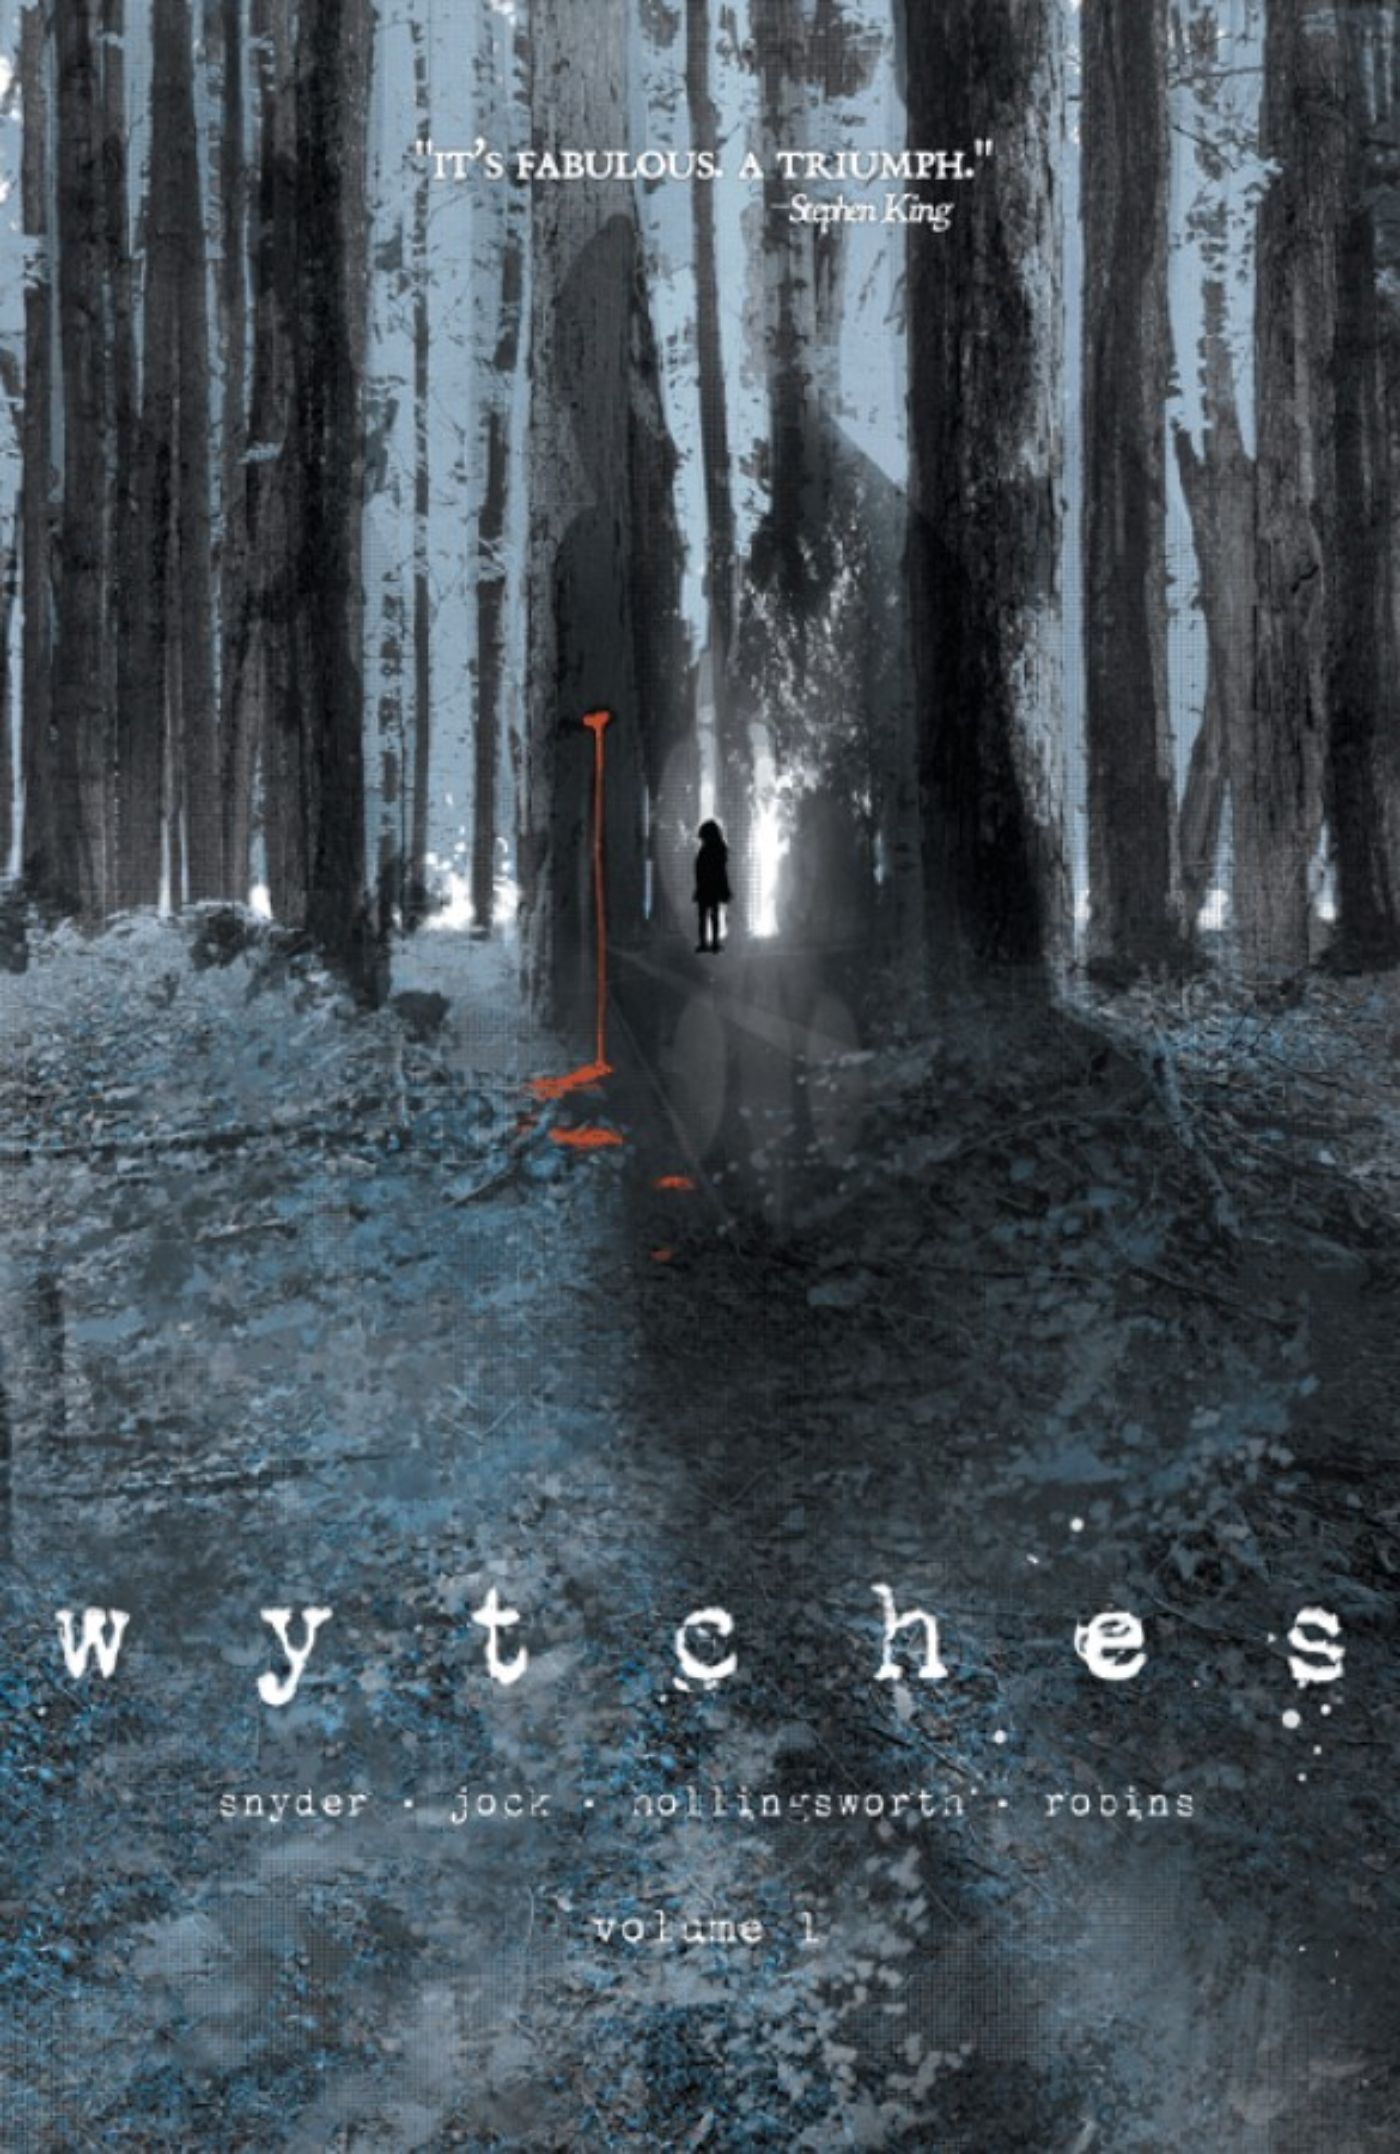 A capa da Wytches apresentando a crítica positiva de Stephen King.